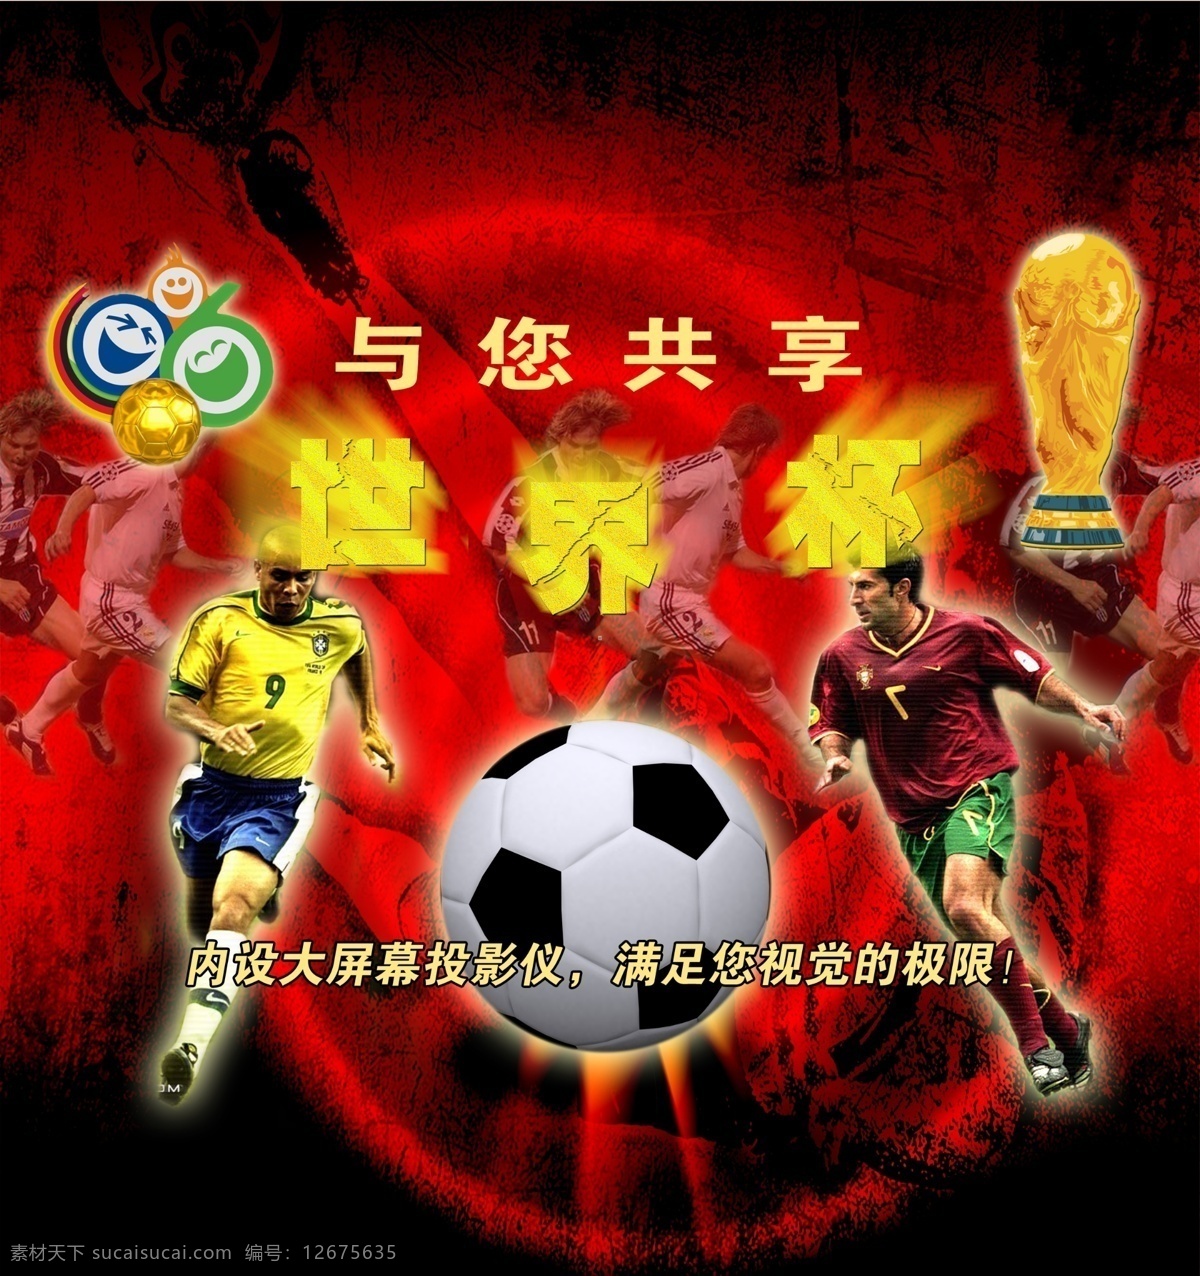 tiff分层 足球 世界杯 分层 广告设计模板 国内广告设计 足球世界杯 源文件库 tiff